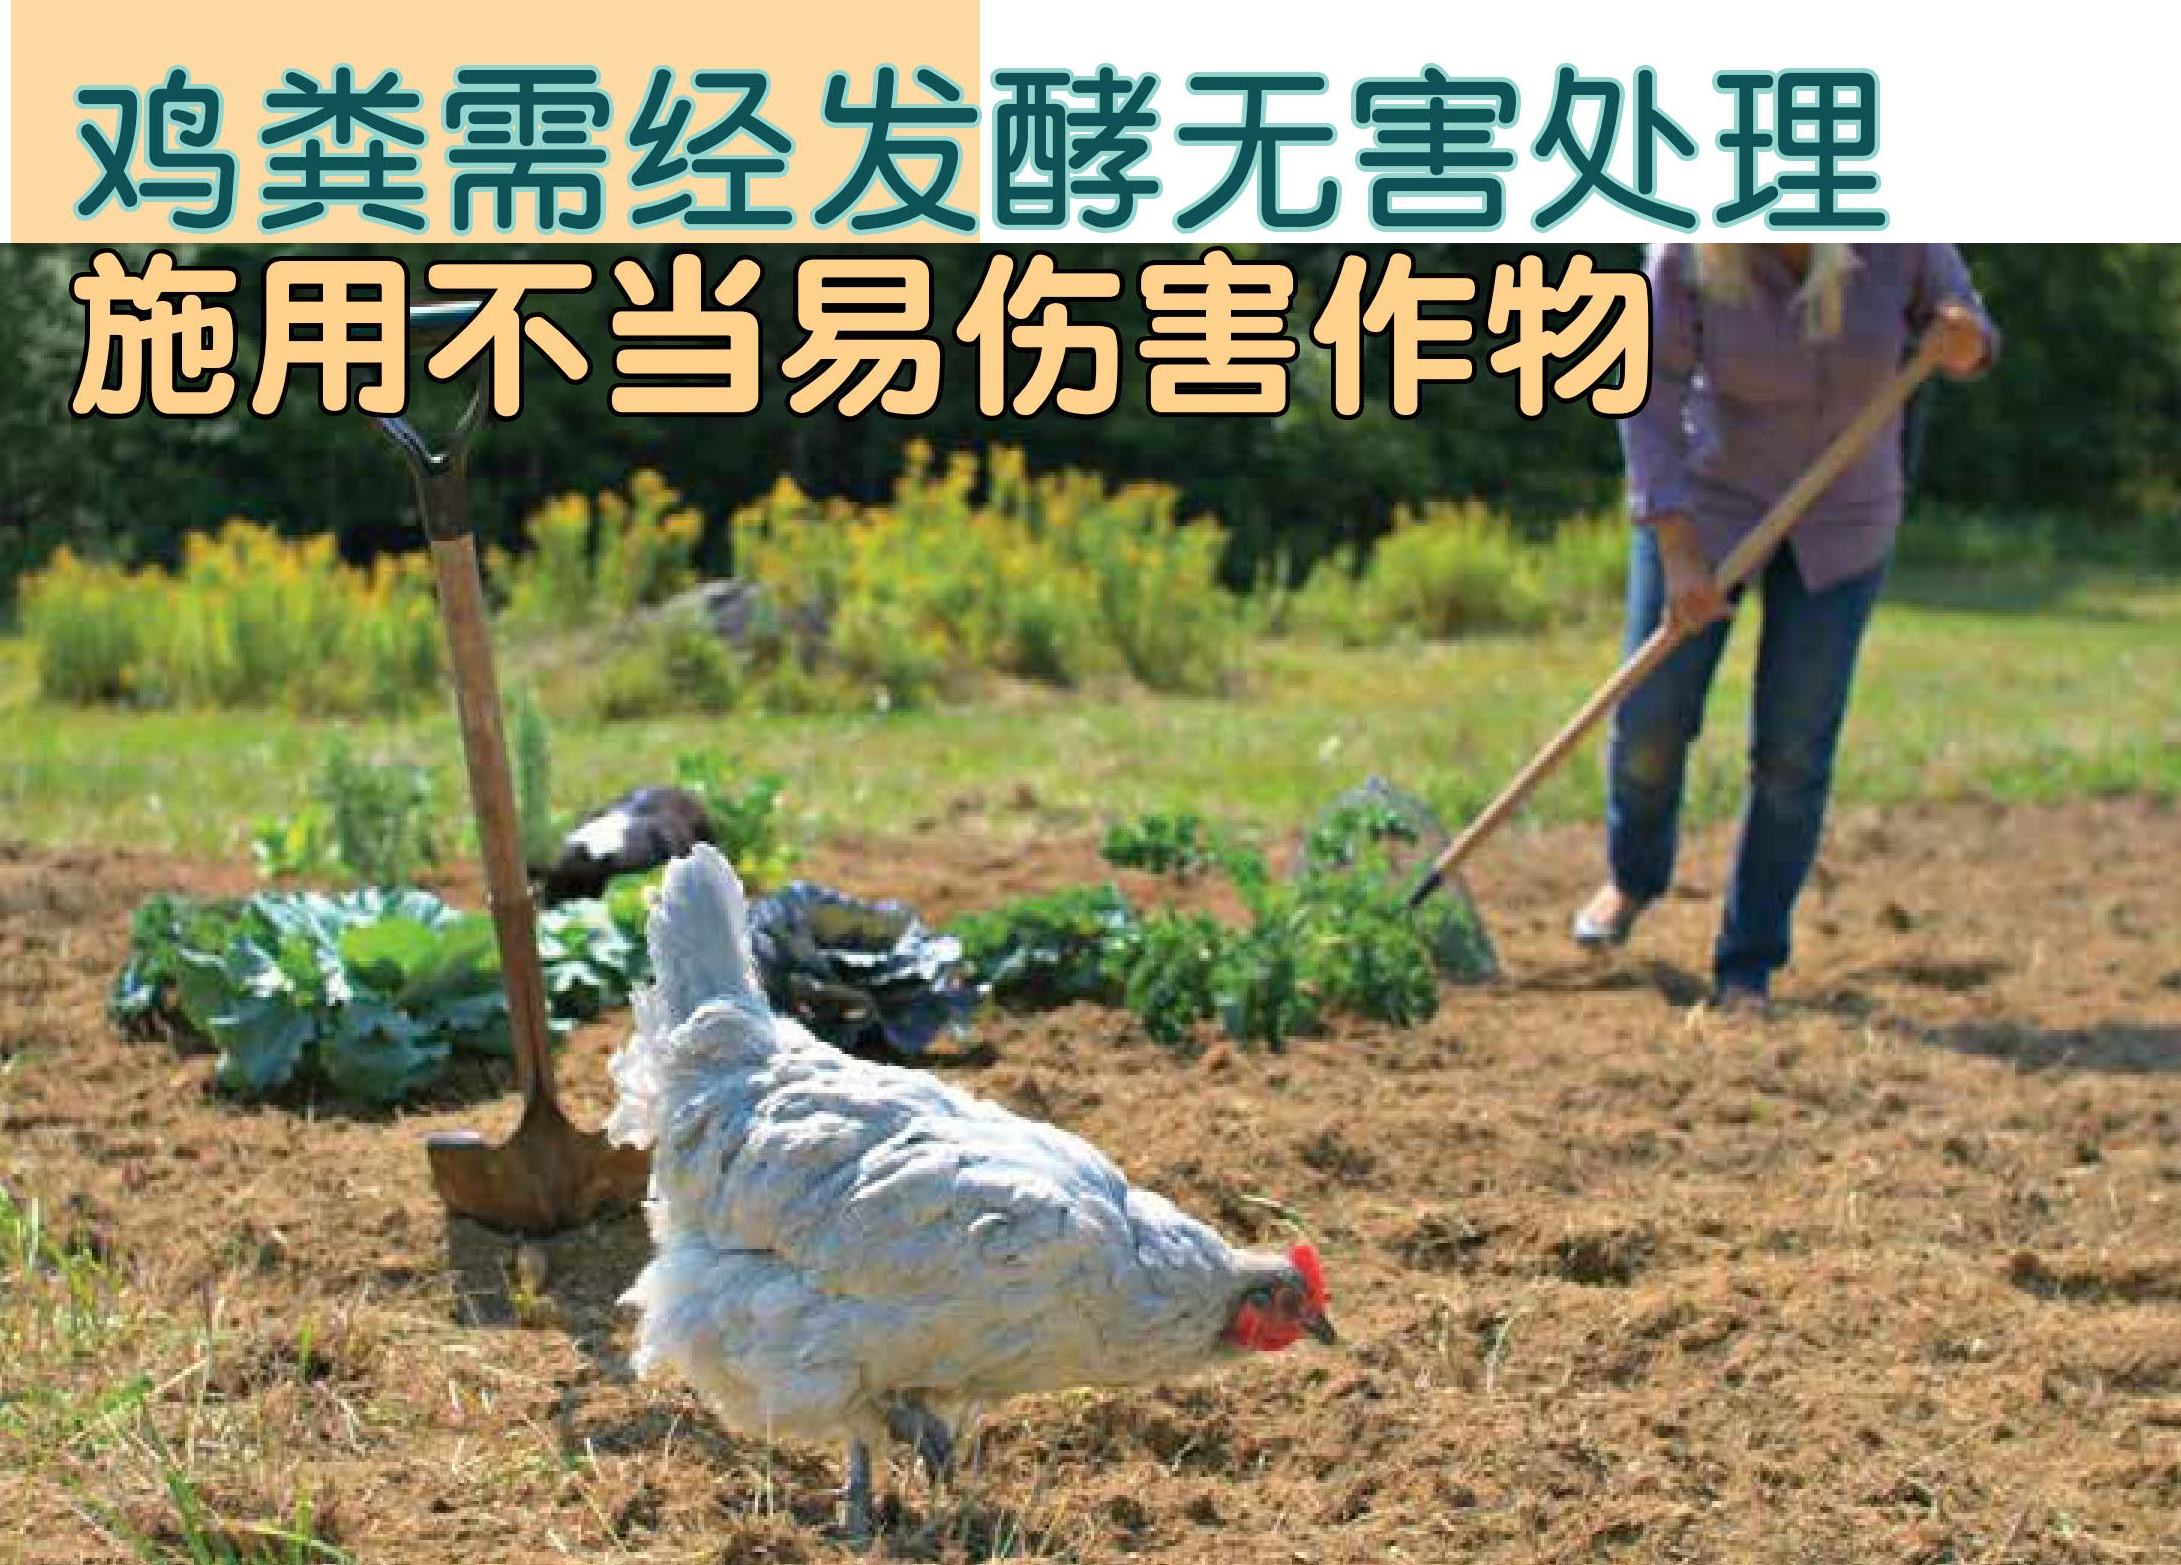 鸡粪需经发酵无害处理 施用不当易伤害作物 - 农牧世界